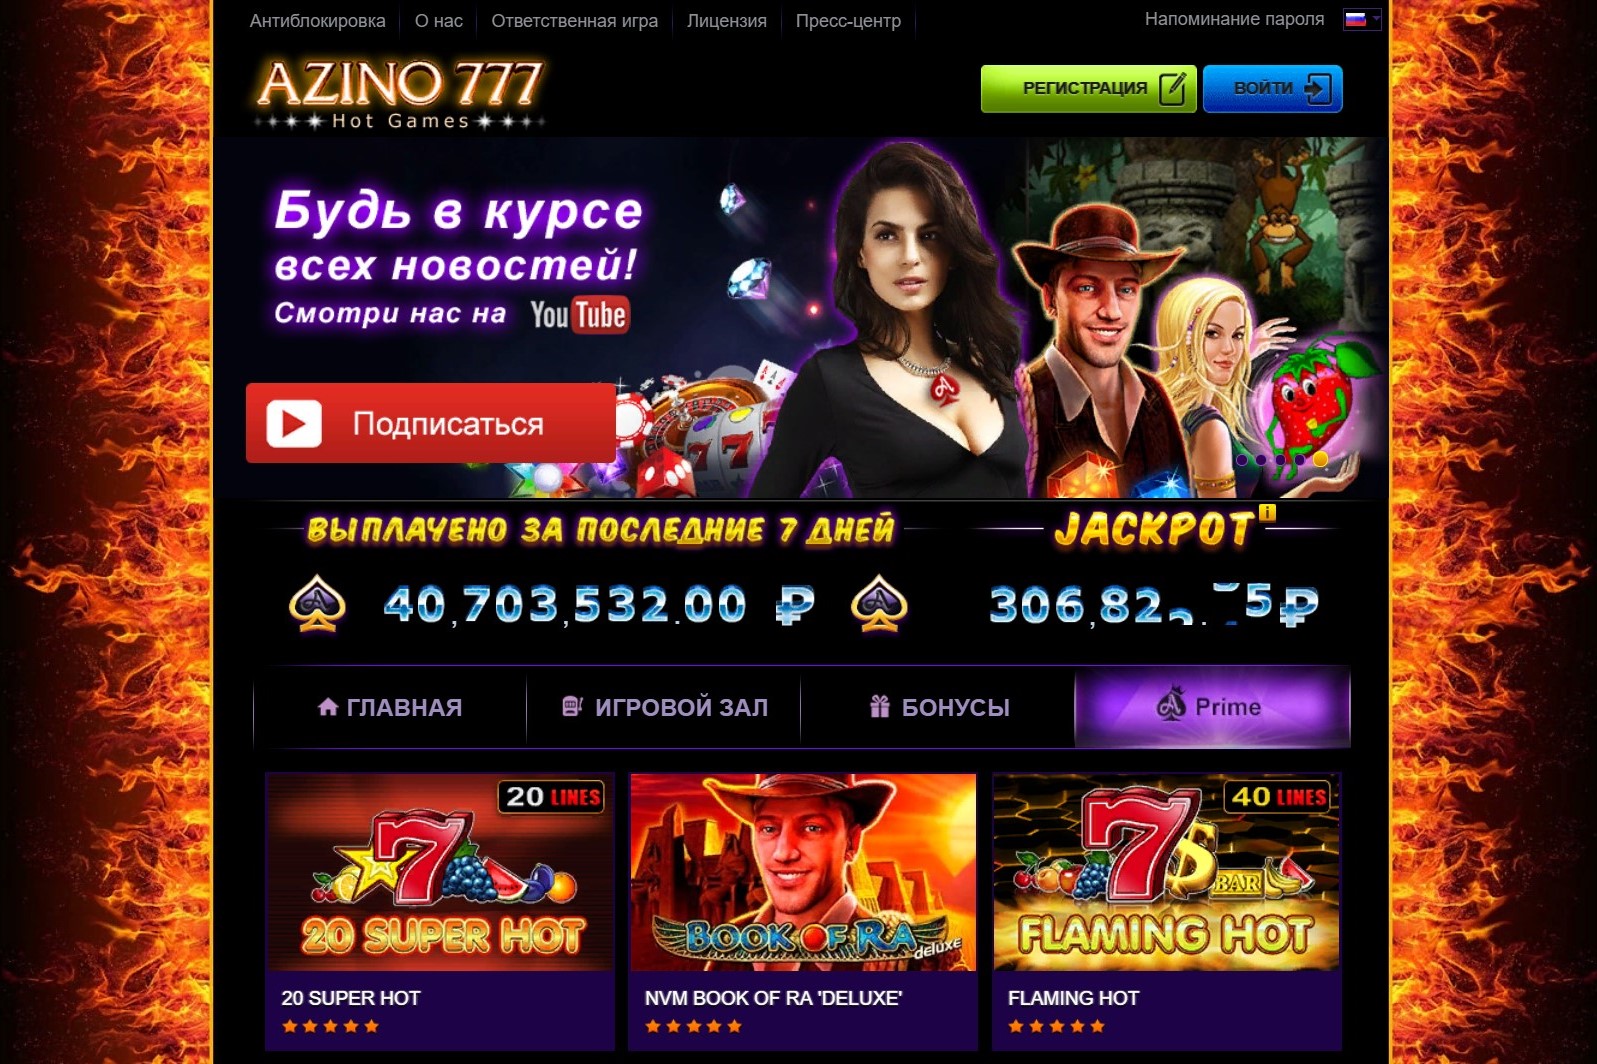 Азимов 777 казино онлайн официальный сайт томат джекпот купить в москве от агрофирмы партнер